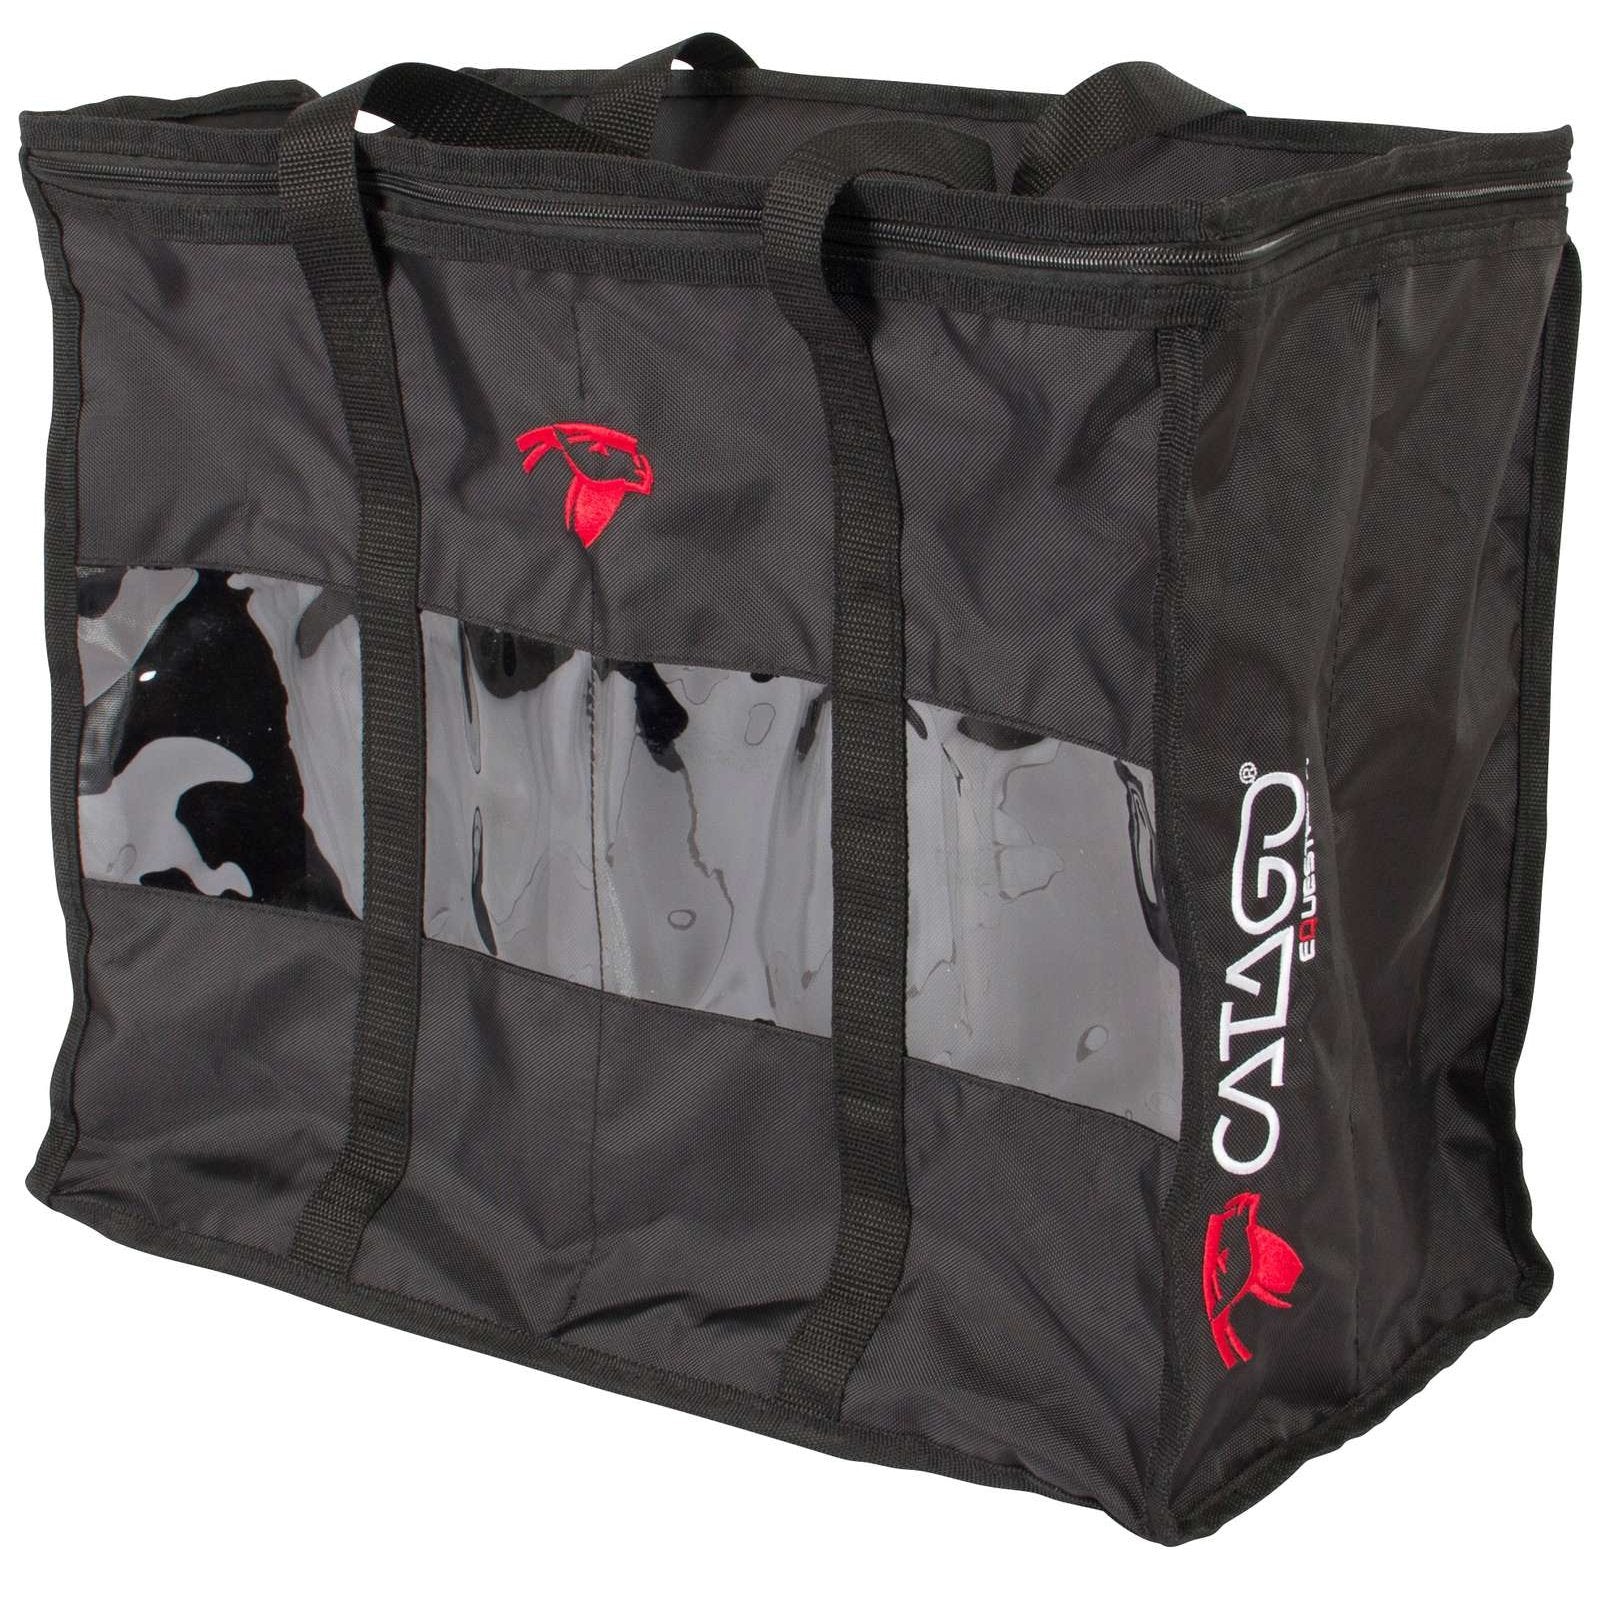 CATAGO Bandagen-Tasche CATAGO bei SP-Reitsport